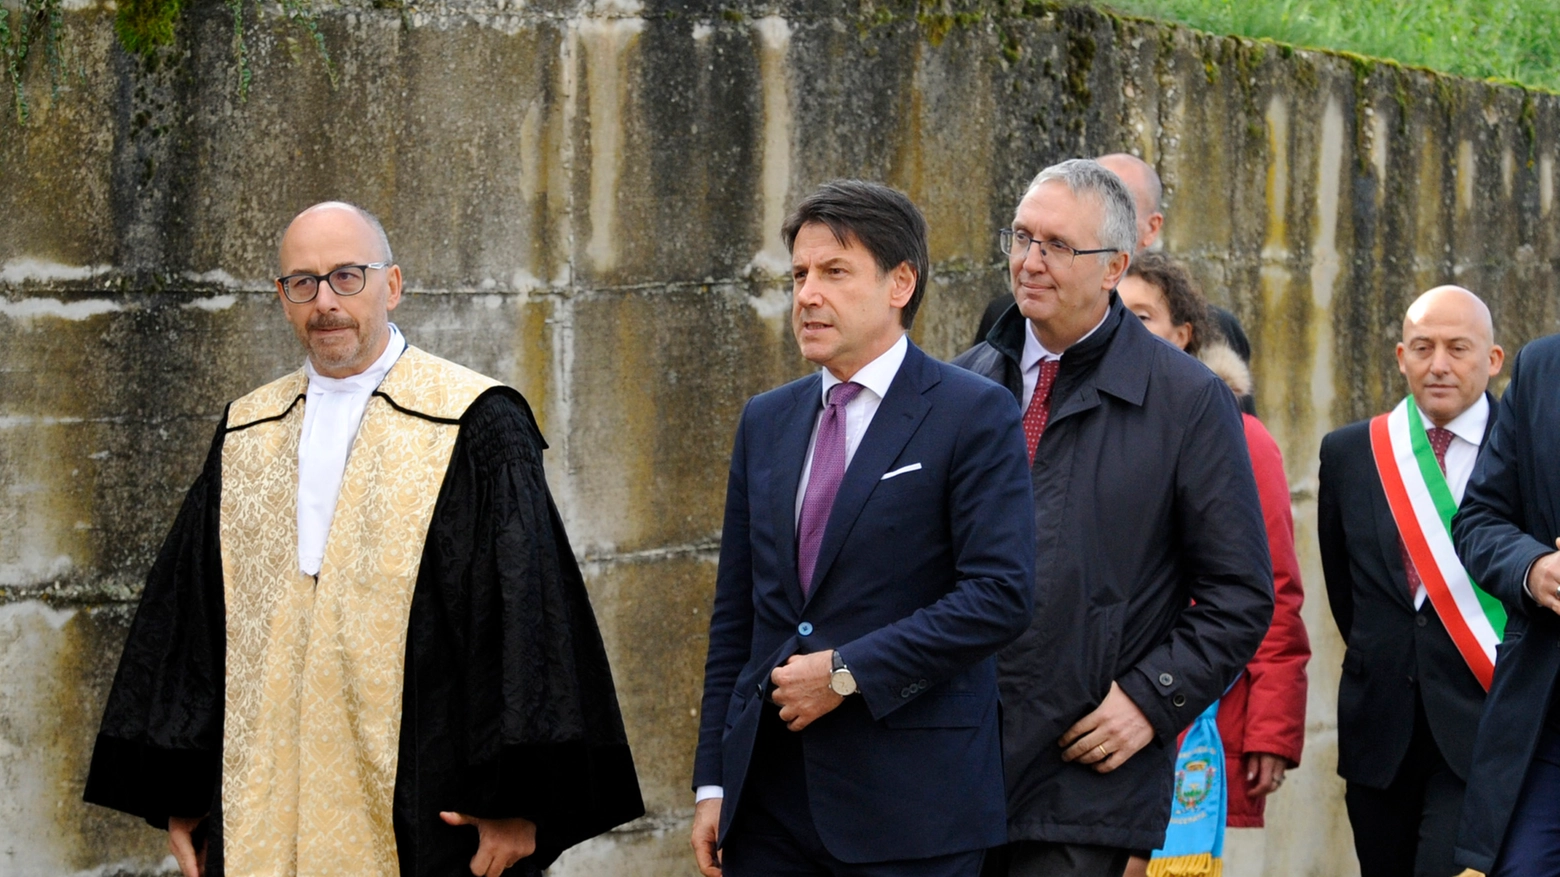 L'arrivo del premier Conte a Camerino per l'inaugurazione dell'anno accademico di Unicam